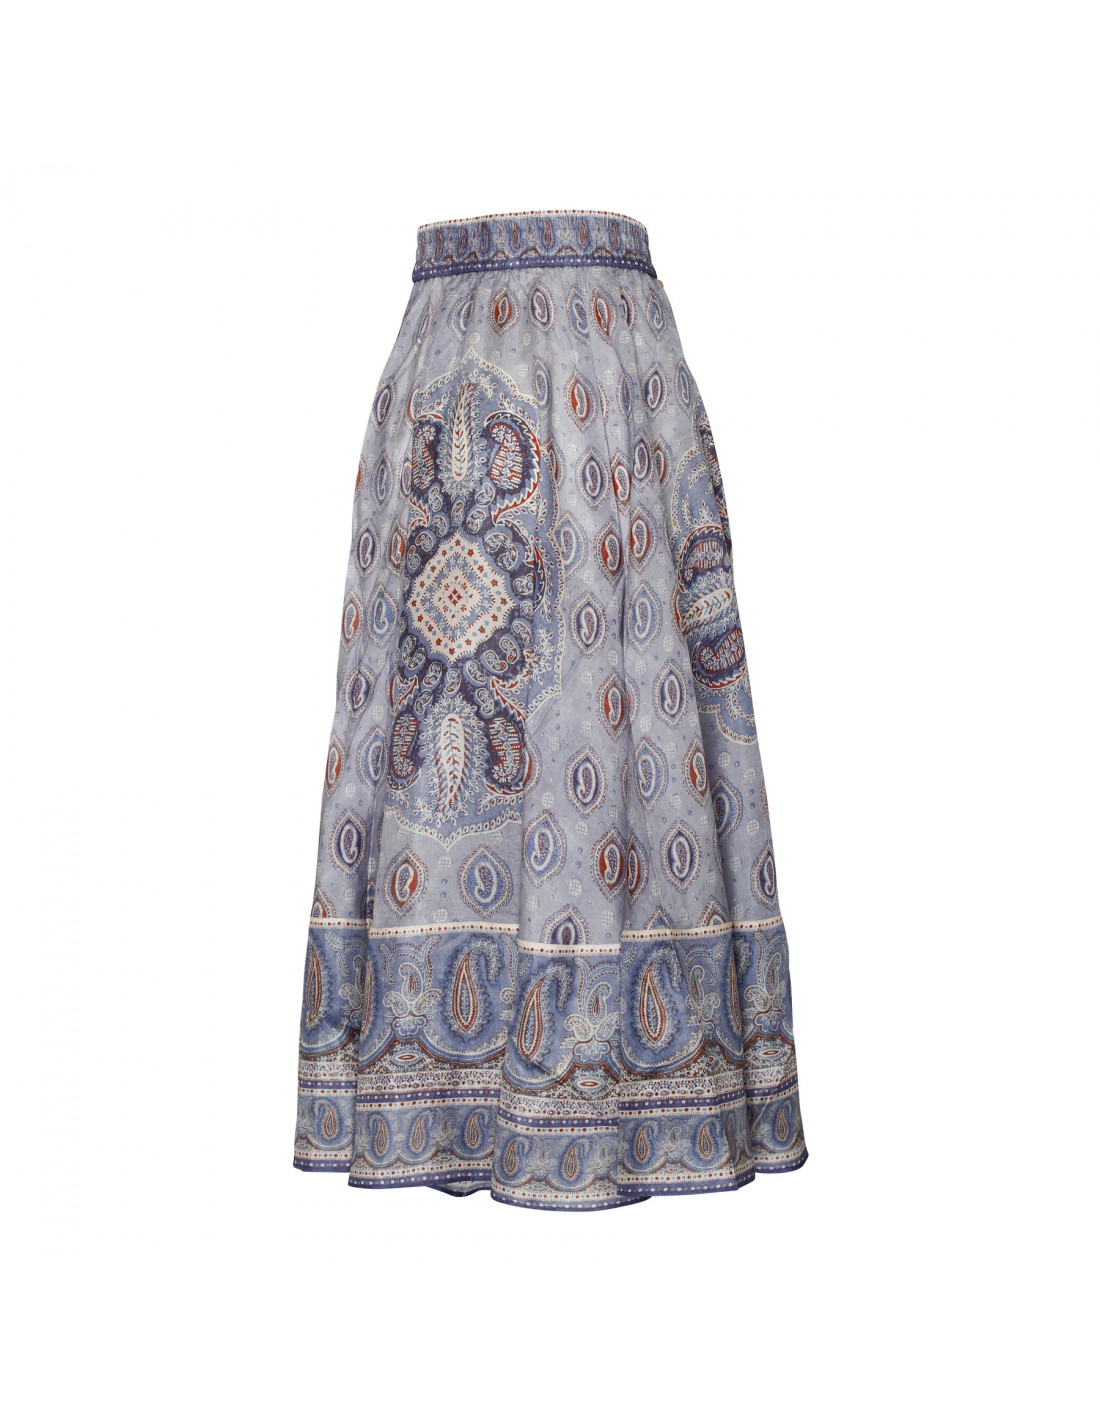 Vitali blue paisley skirt